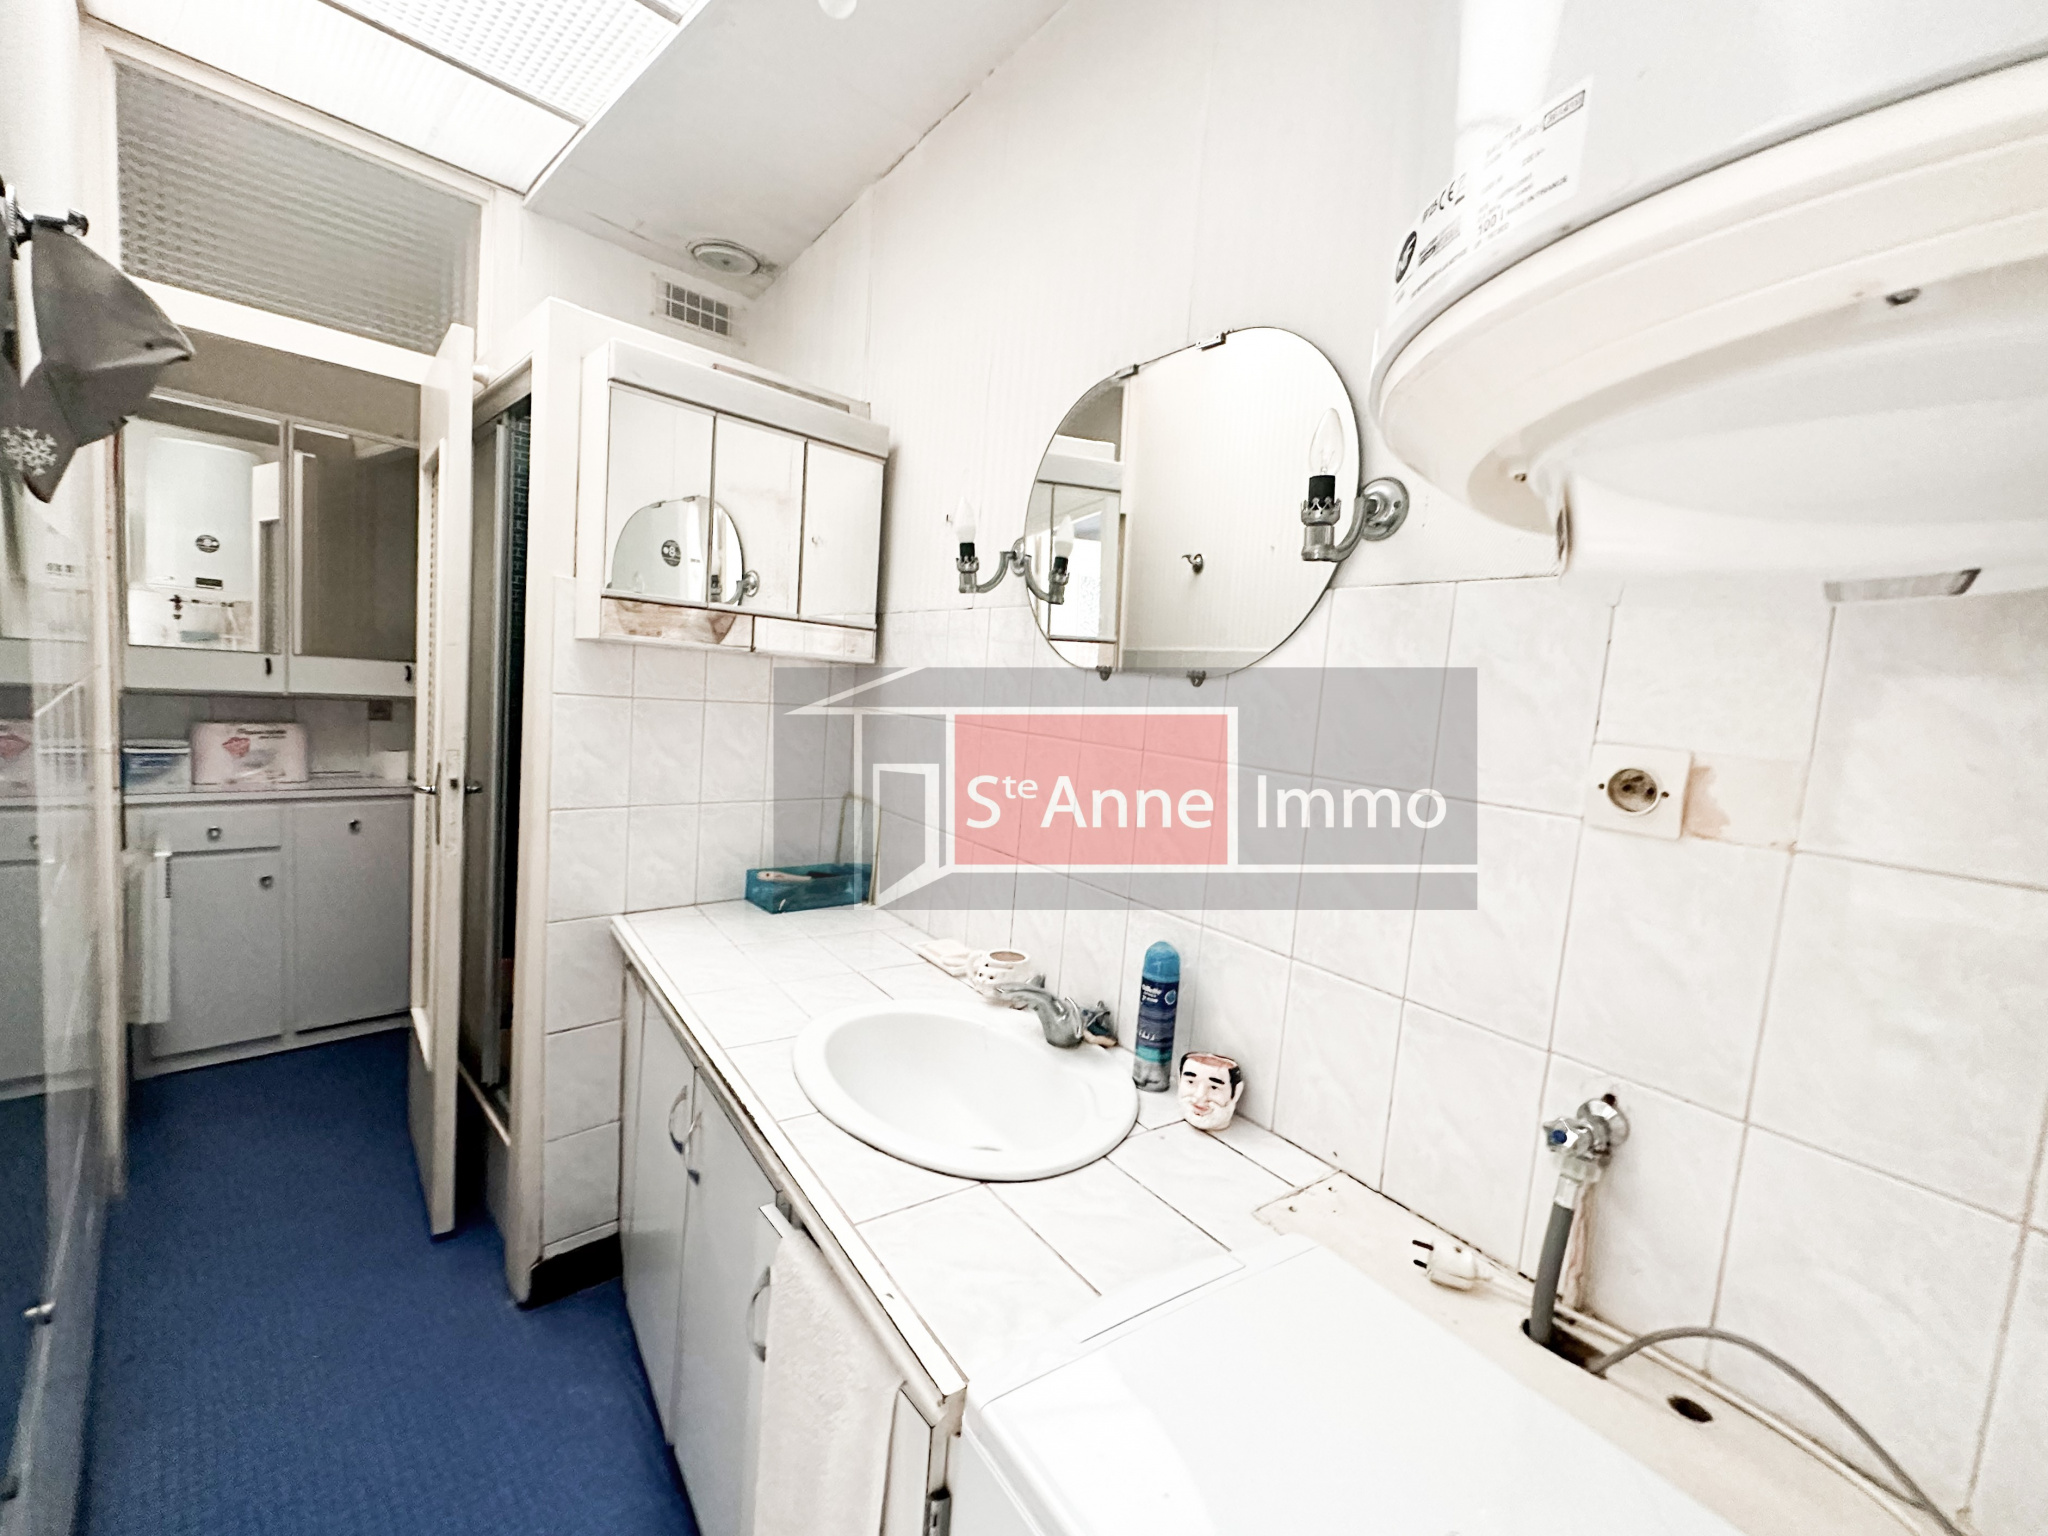 Immo80 – L'immobilier à Amiens et dans la Somme-Maison – 3 chambres – véranda – jardin – cave – dépendance